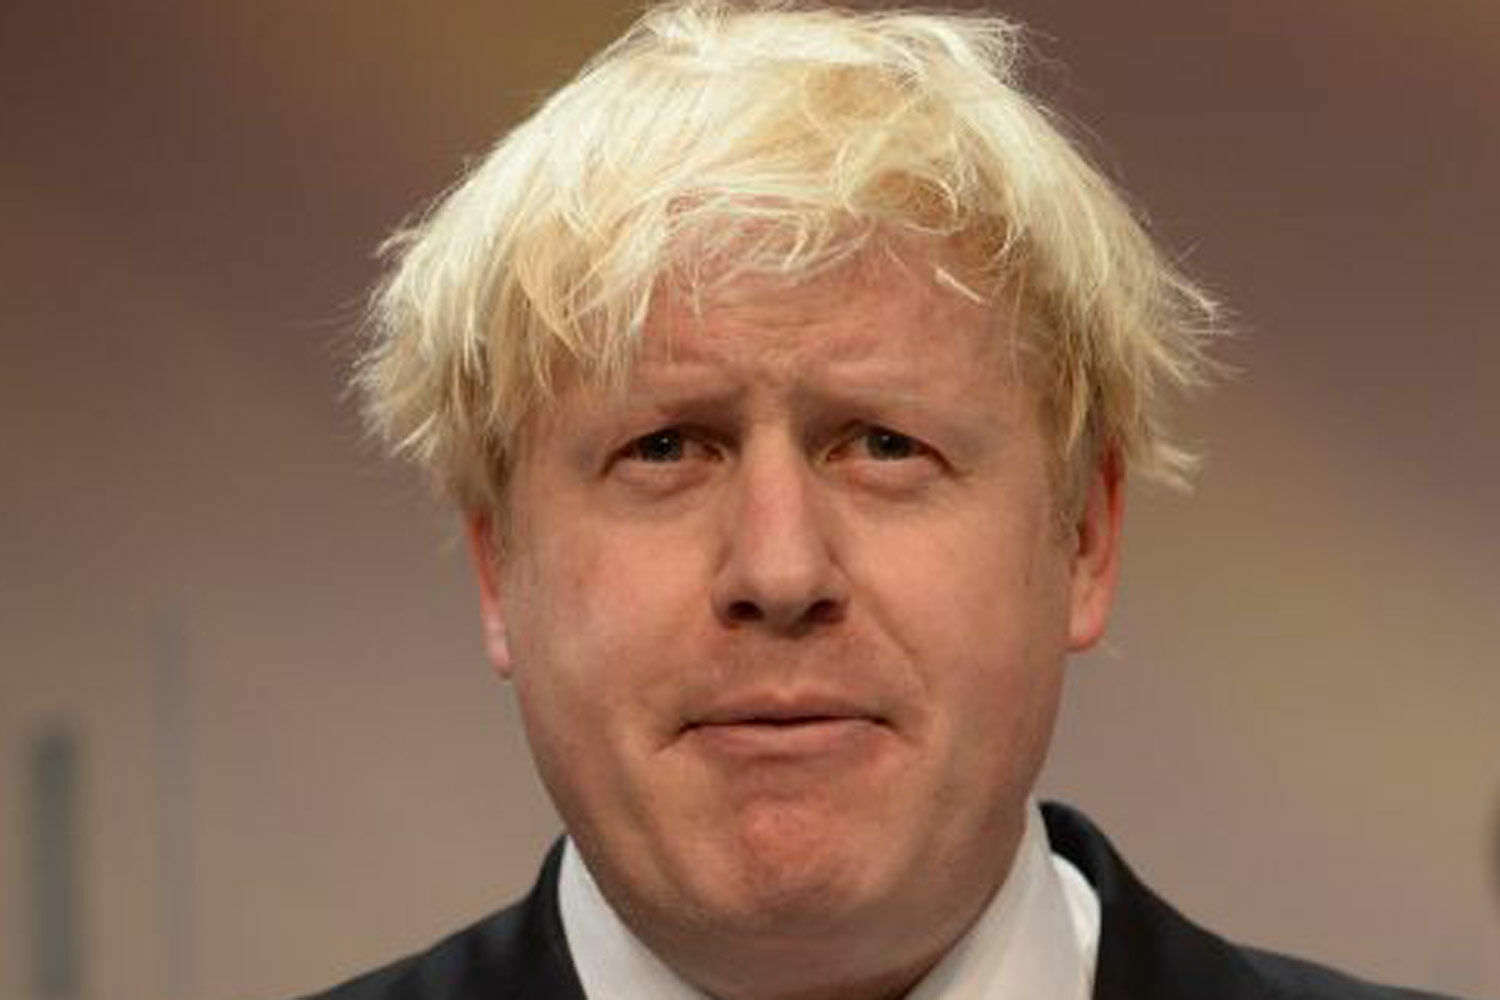 Британский премьер-министр Борис Джонсон заразился коронавирусом